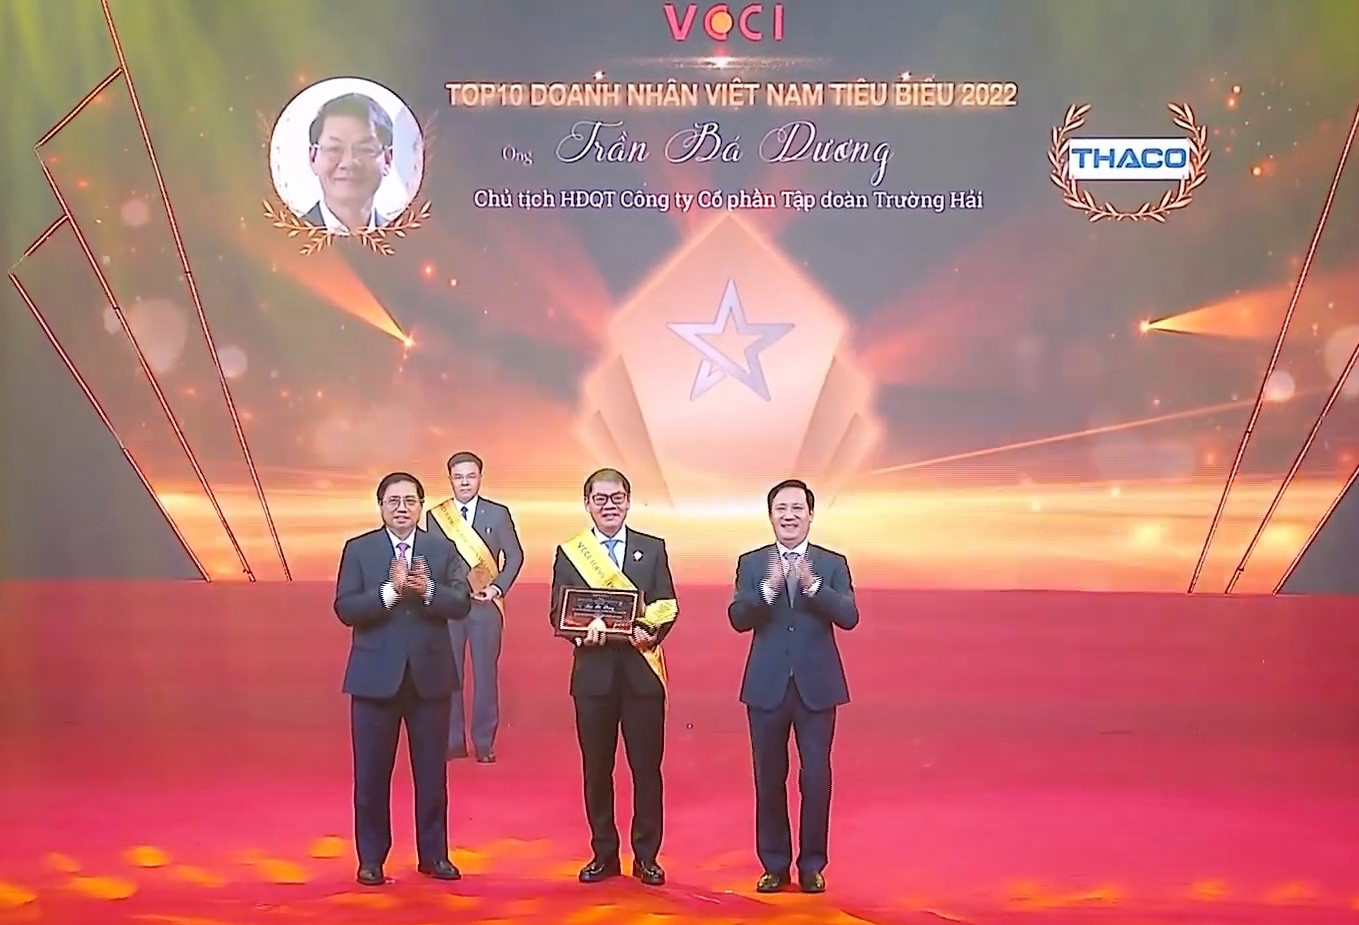 Chủ tịch HĐQT THACO Trần Bá Dương nhận danh hiệu Top 10 Doanh nhân Việt Nam tiêu biểu 2022.